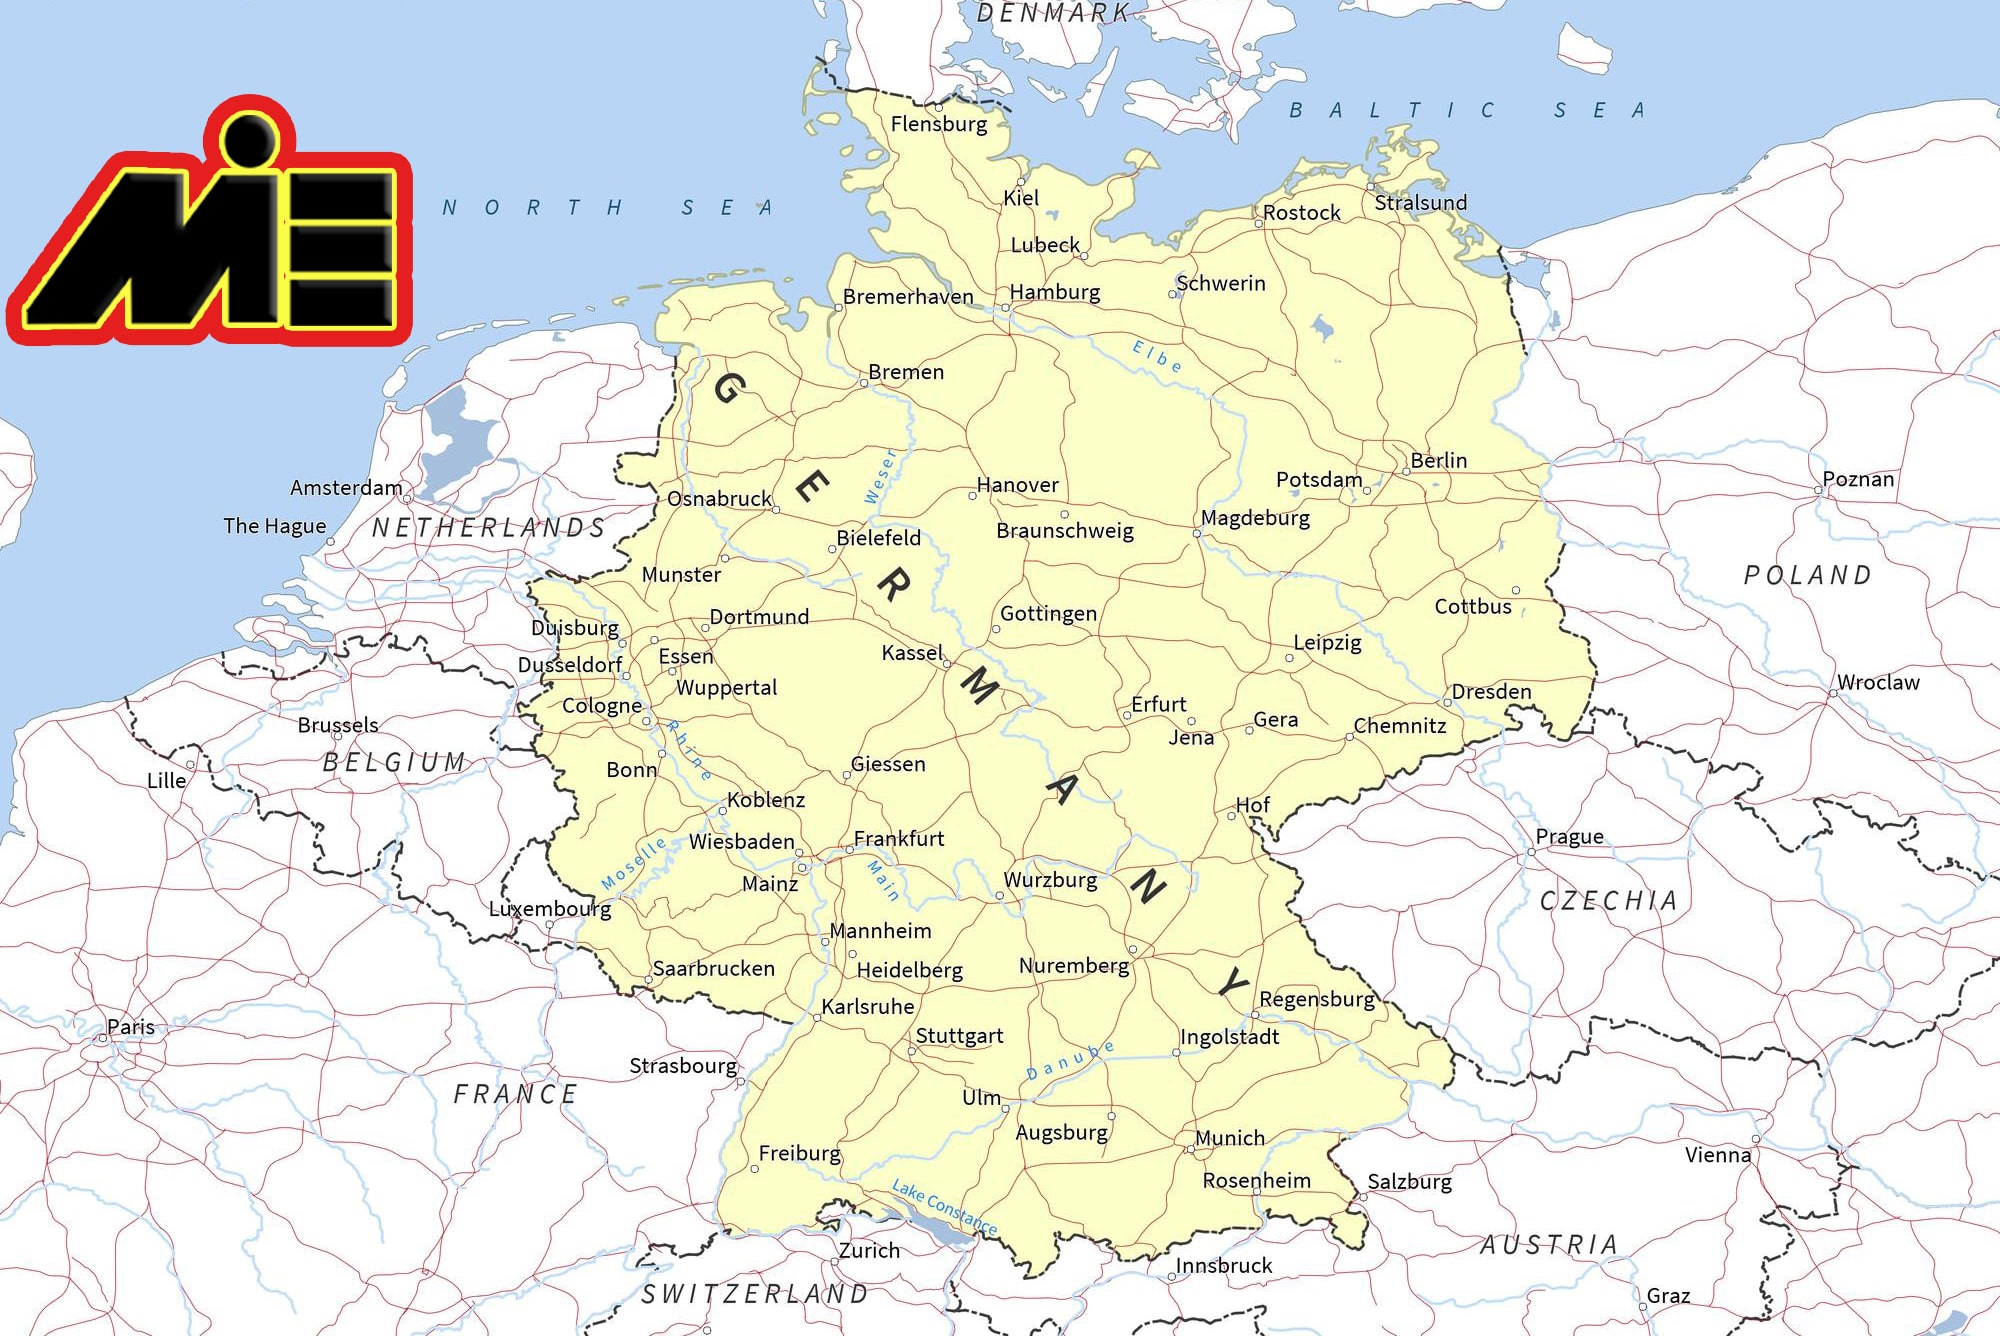 نقشه آلمان - مهاجرت به آلمان - آلمان کجاست؟